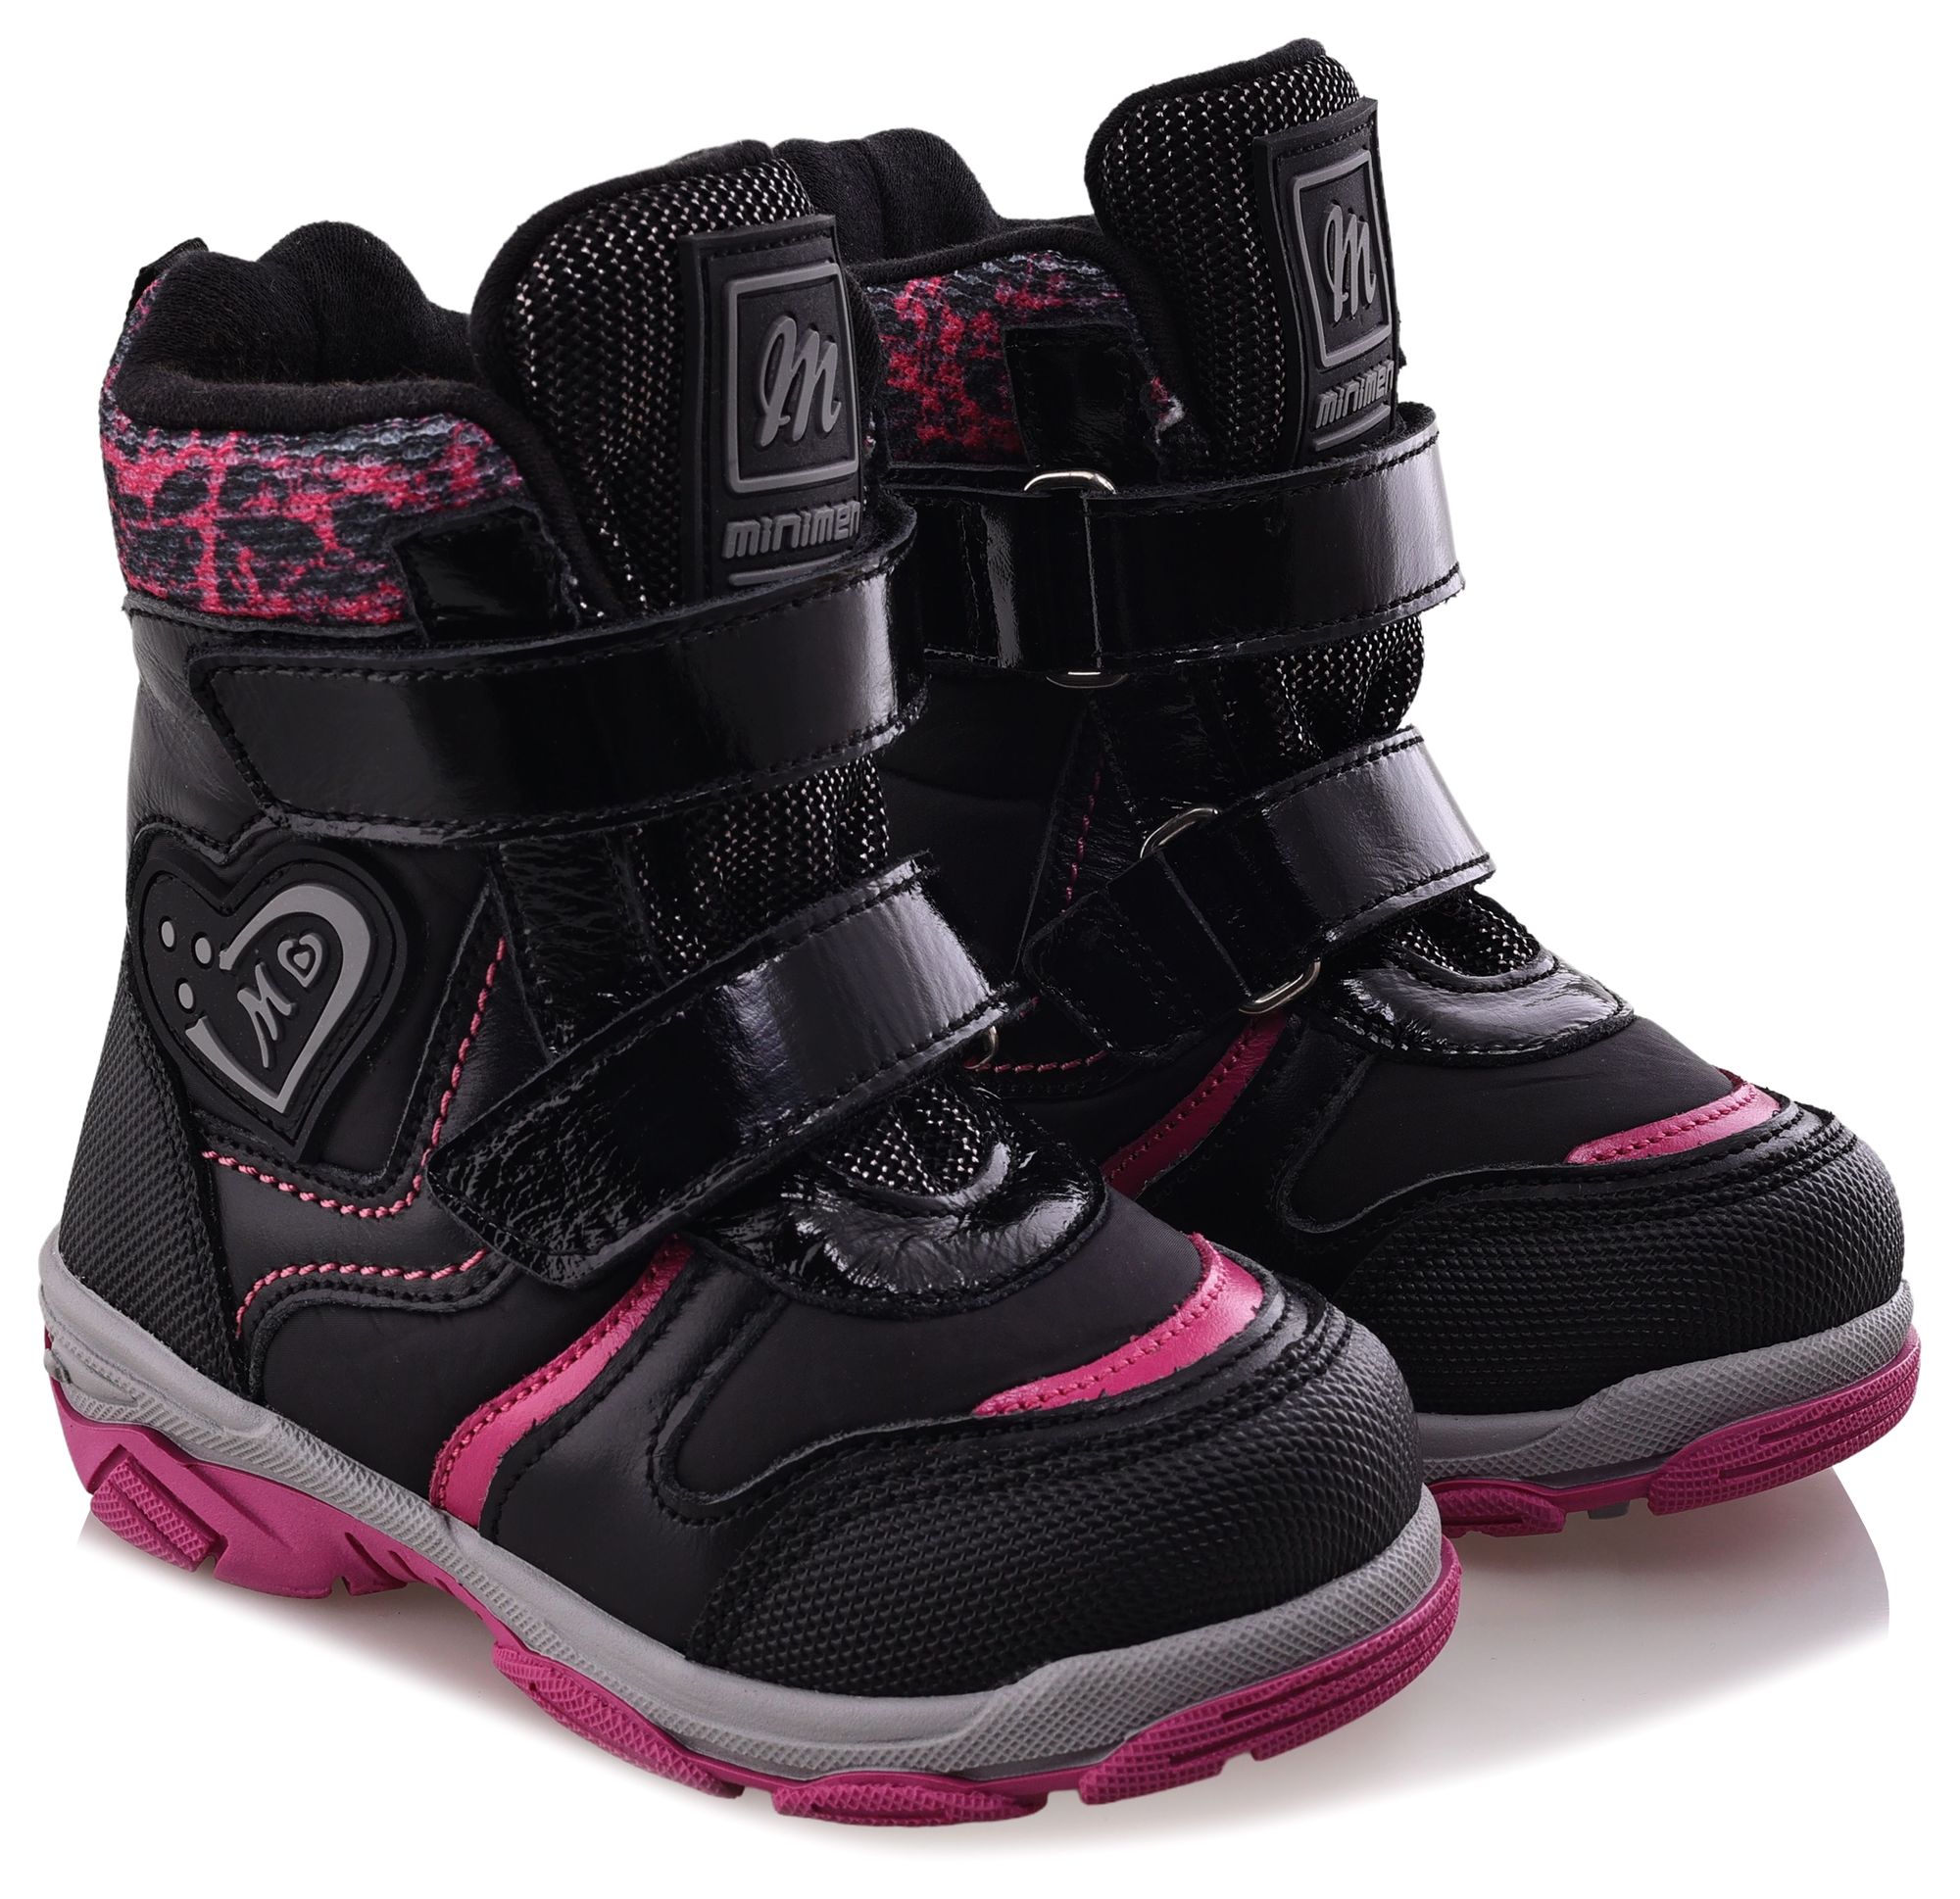 Ботинки Minimen для девочек, чёрные, размер 35, 2656-54-23B-01 ботинки minimen для девочек розовые размер 28 2656 53 23b 02